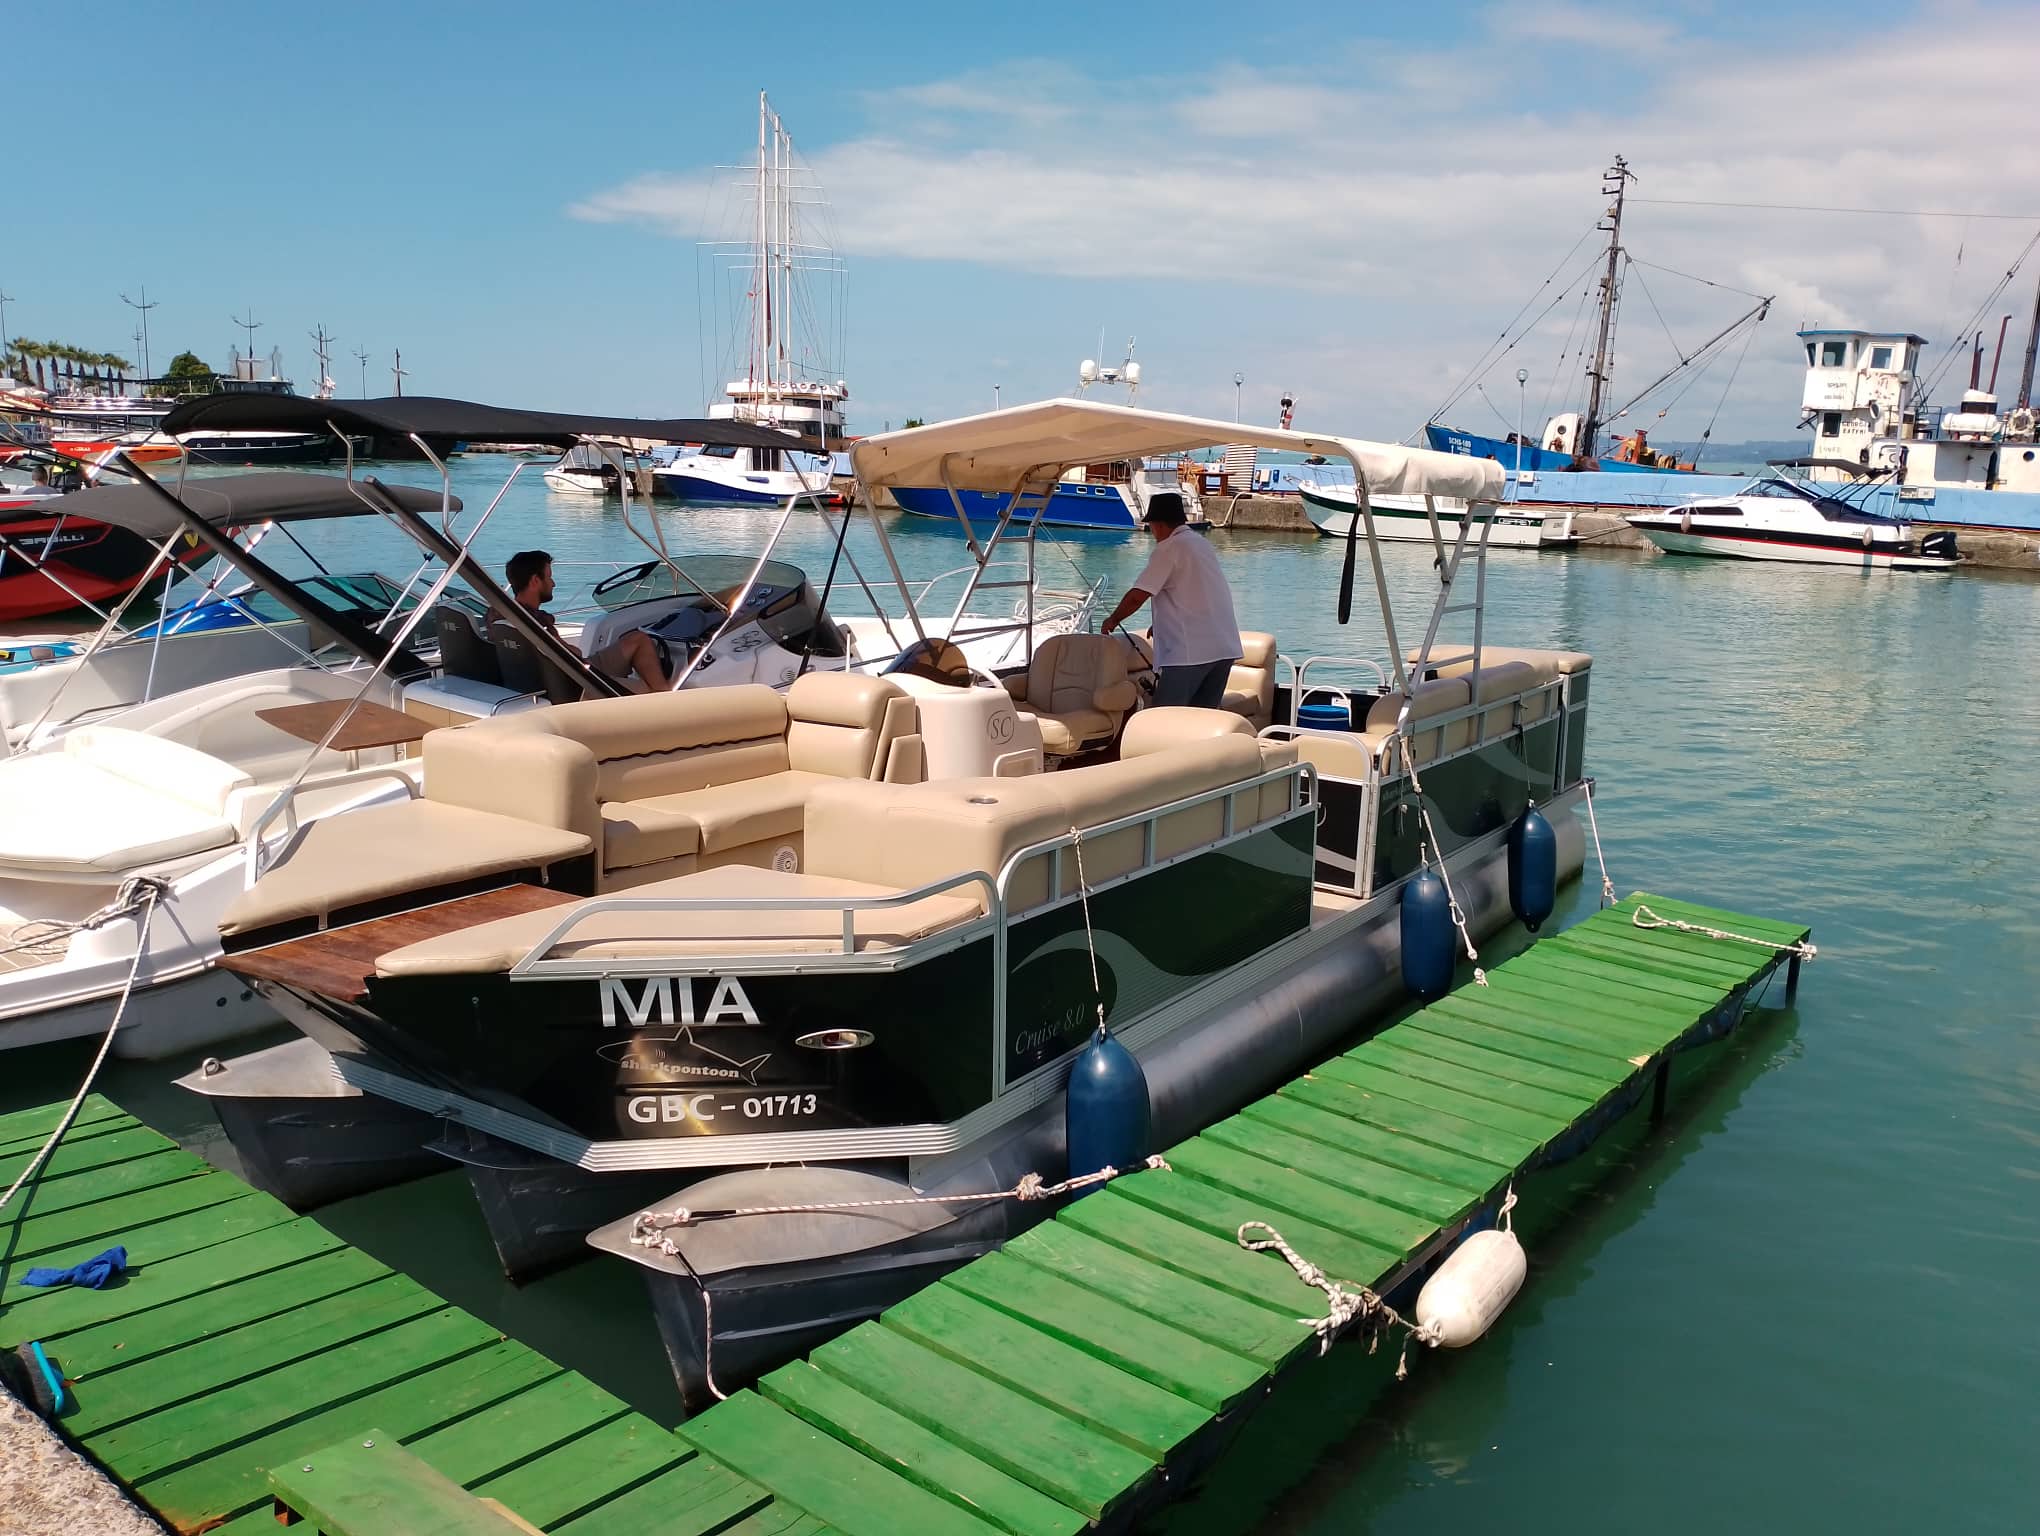 Yacht "Mia"